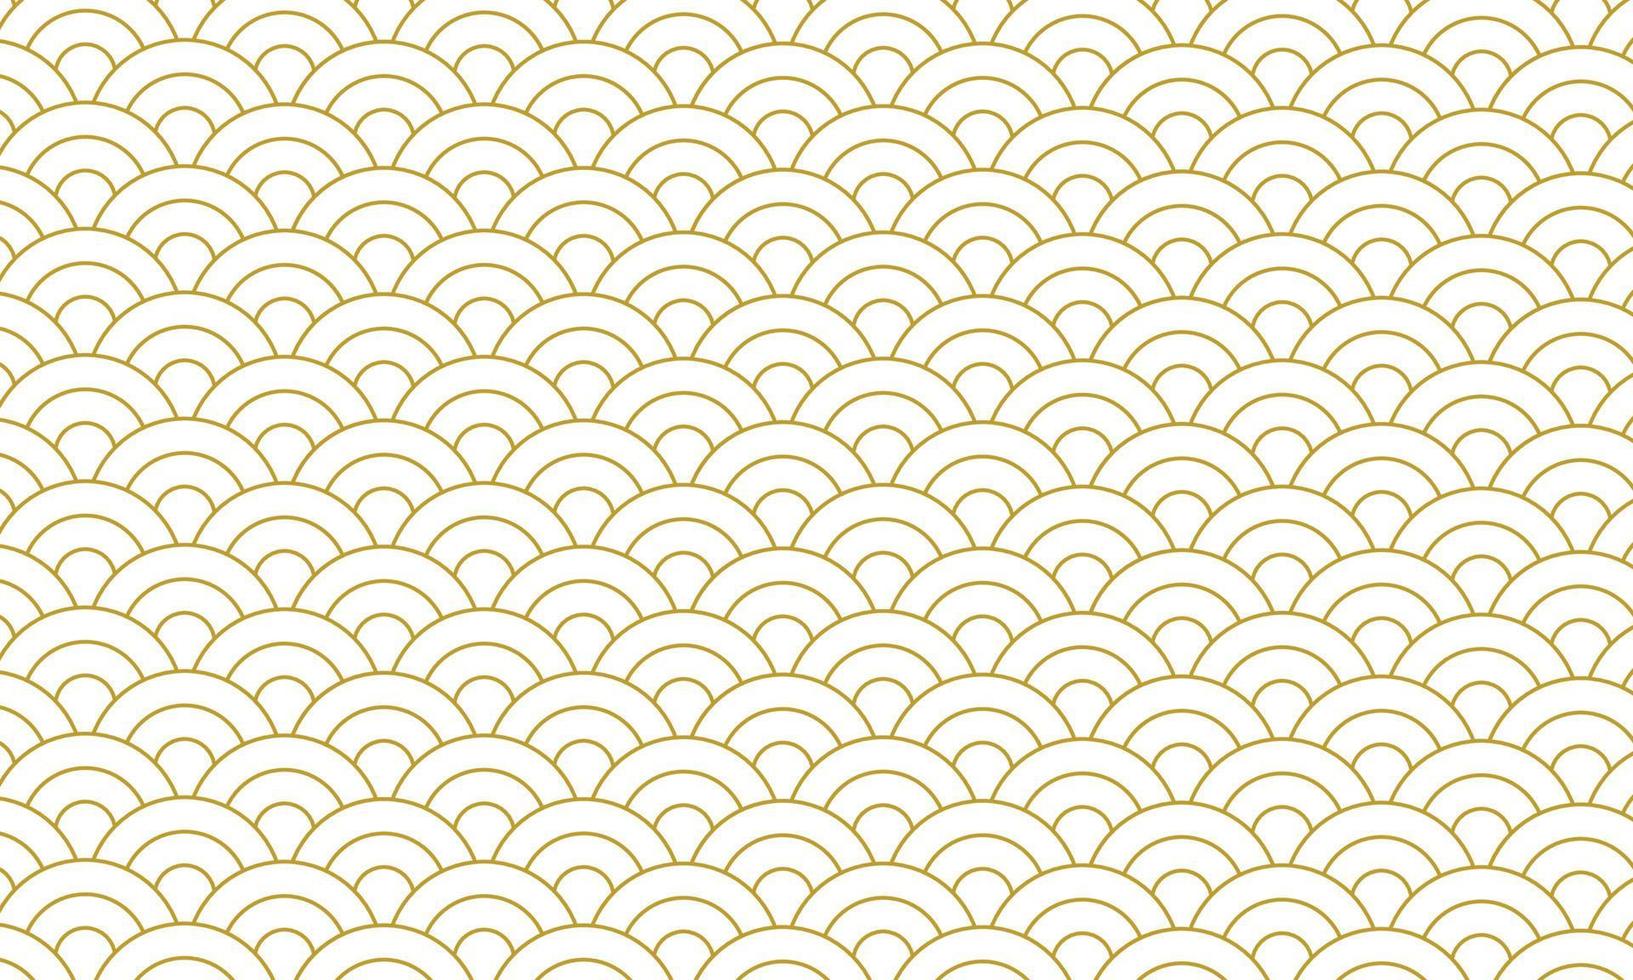 padrão de ouro estilo japonês, fundo dourado vetor